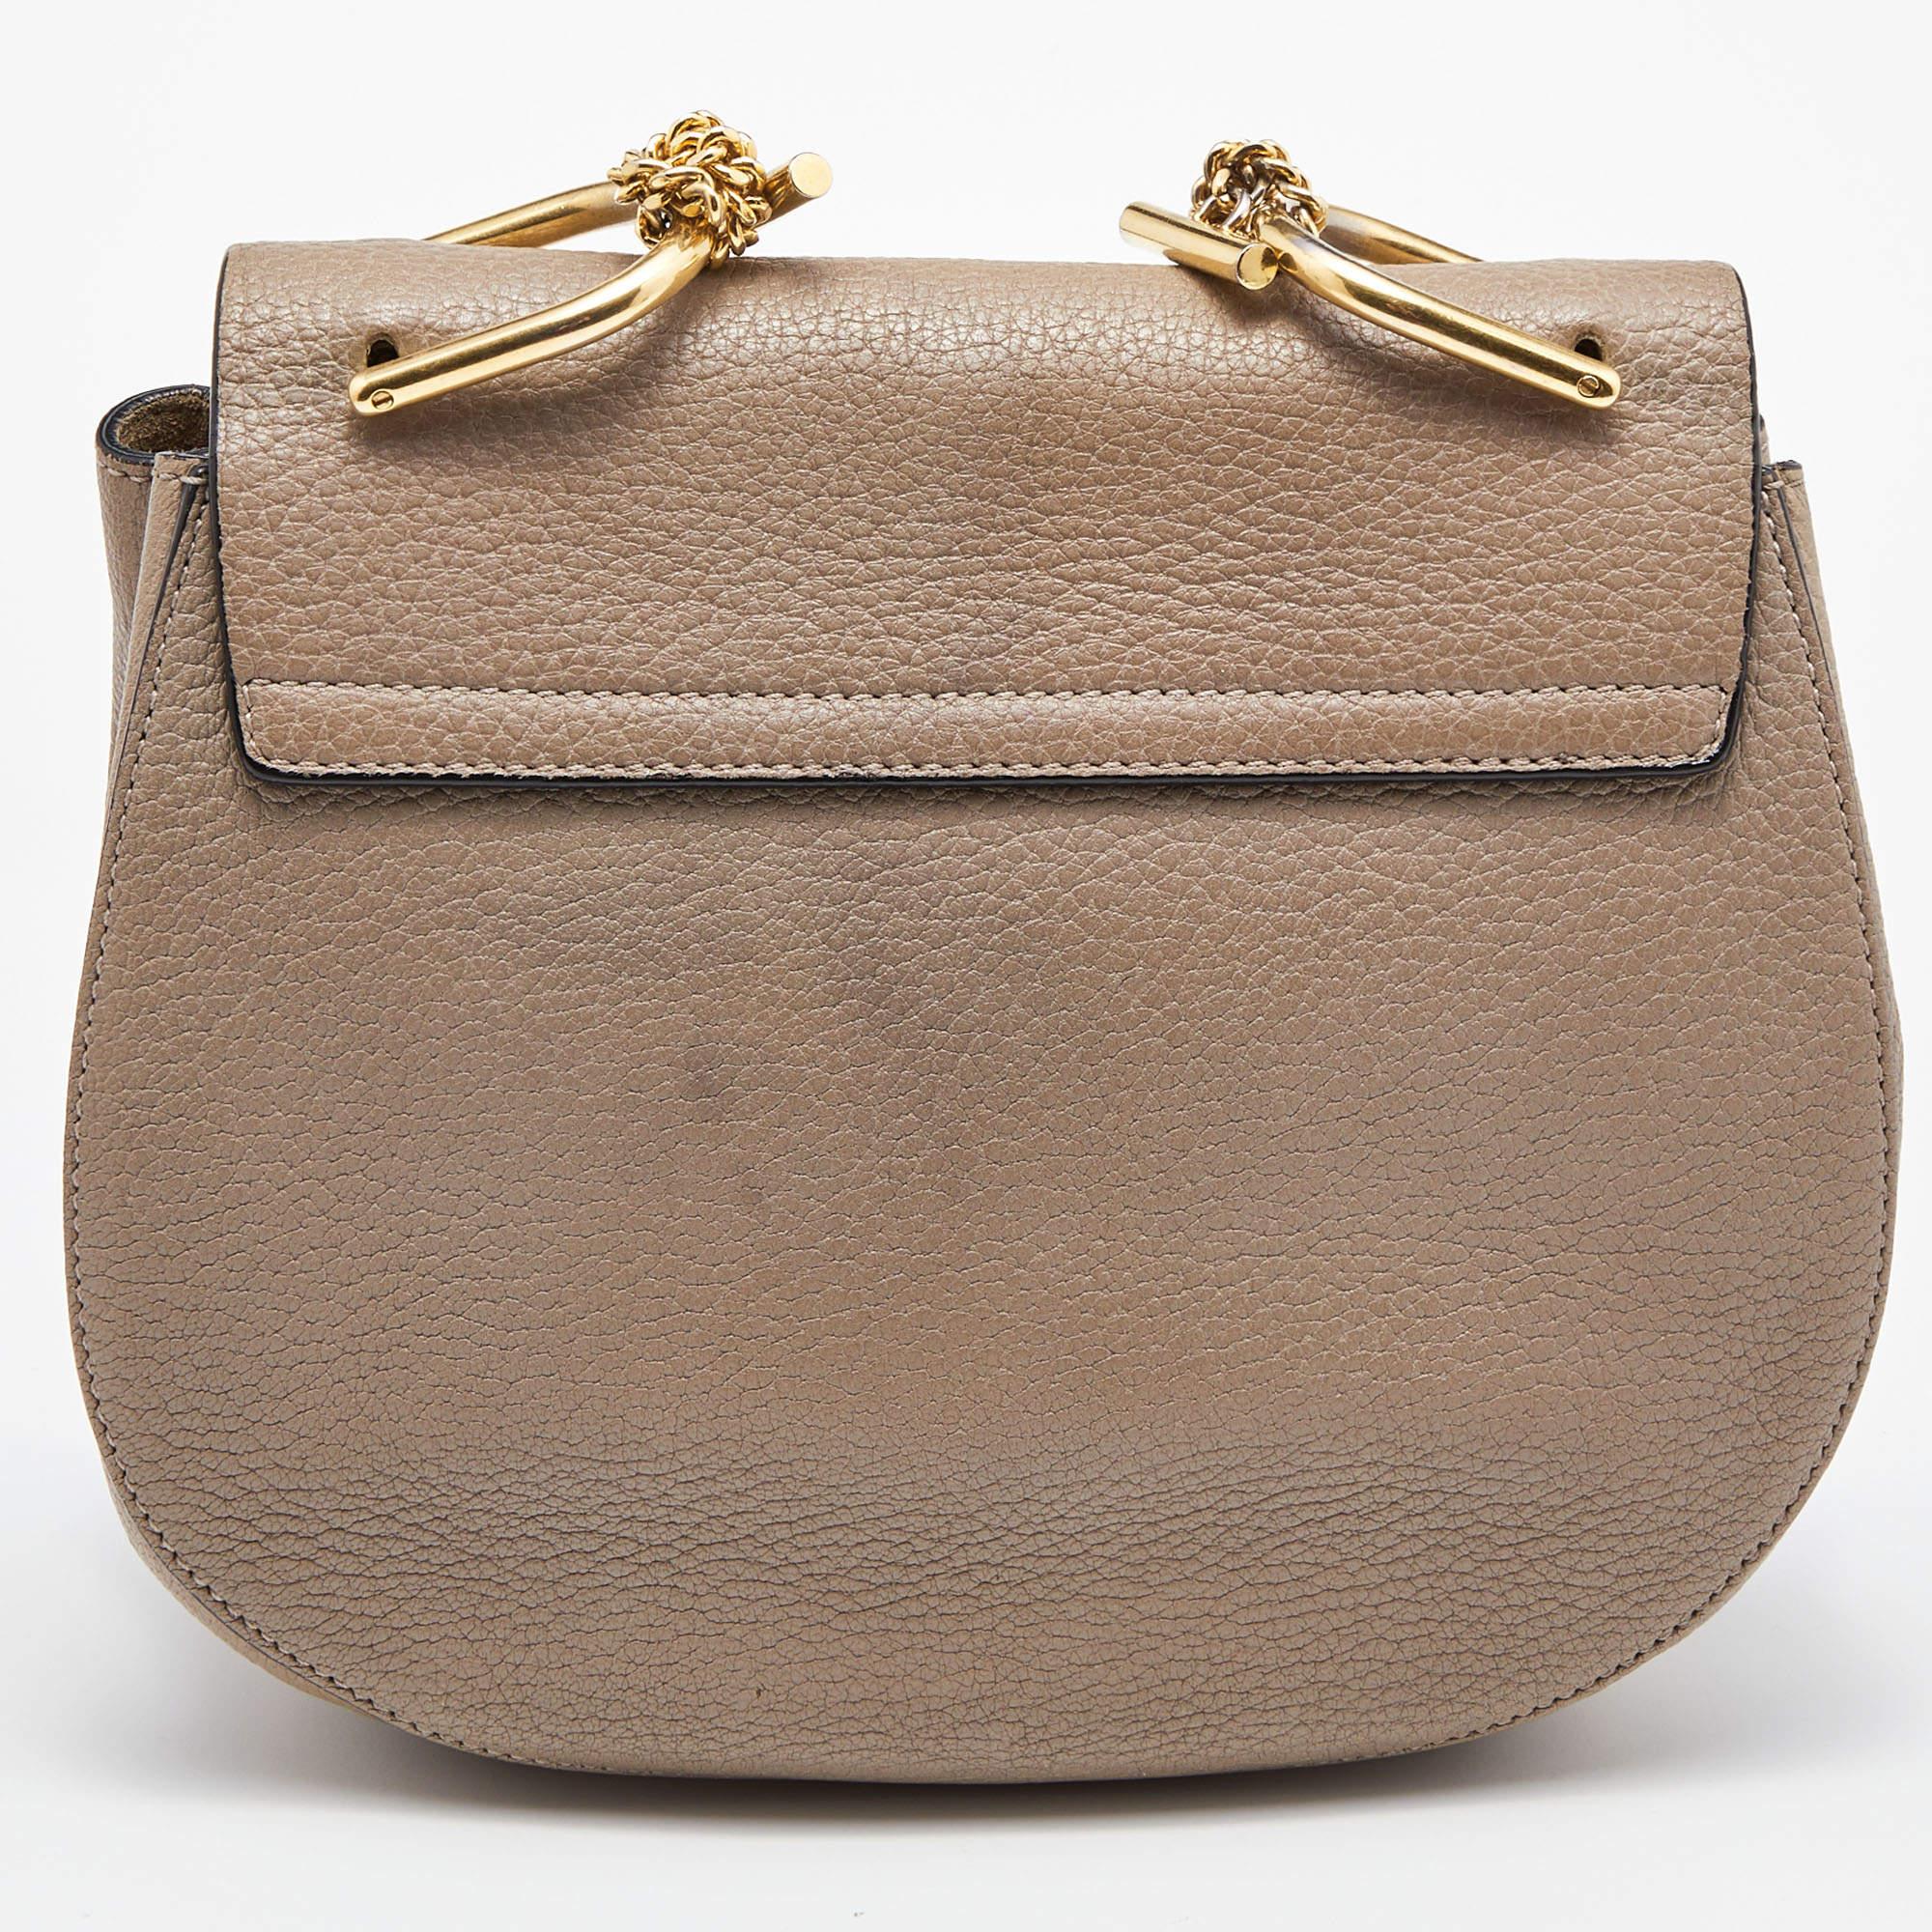 L'un des sacs les plus reconnaissables dans le monde du luxe, le sac Drew de Chloé faisait partie de la collection automne/hiver 2014 du label. Il présente une forme distincte et des détails de style minimal. Ce sac à bandoulière est méticuleusement